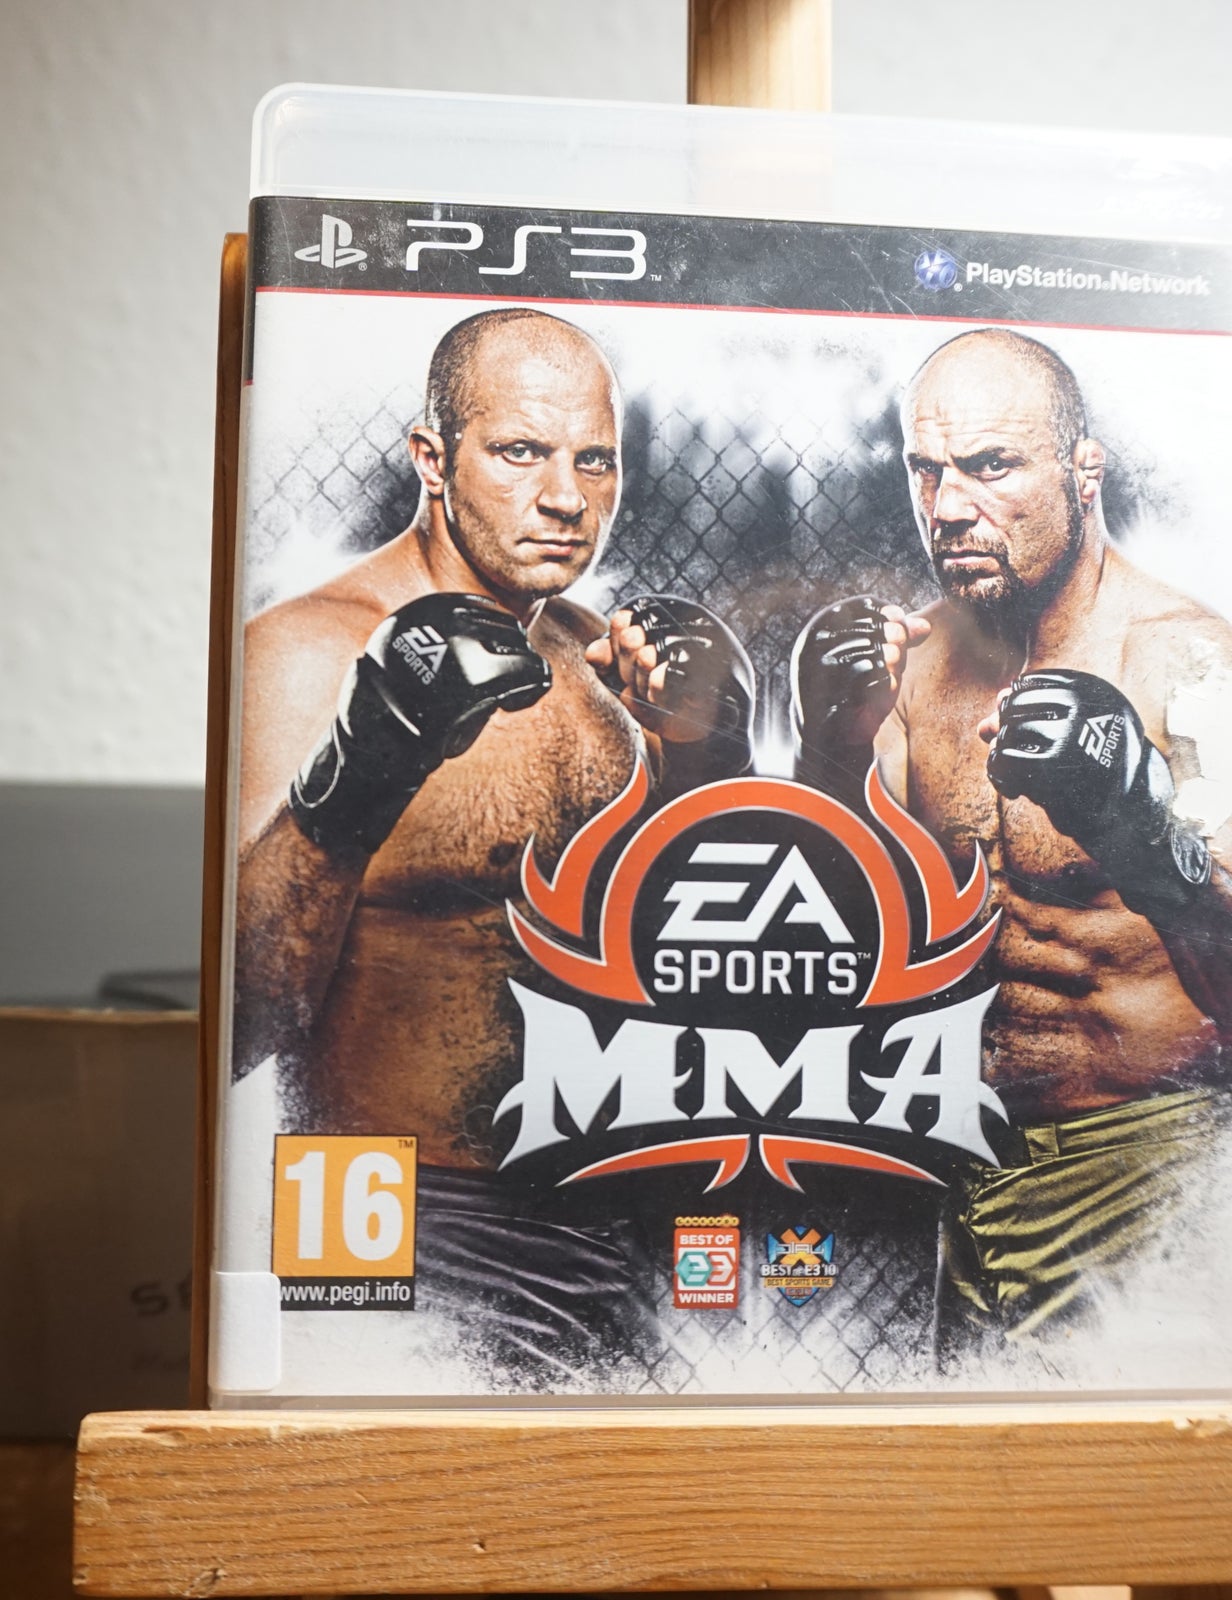 2 jogos de luta PS3, UFC 2010 e MMA da EA SPORTS em segunda mão durante 15  EUR em Mungia na WALLAPOP